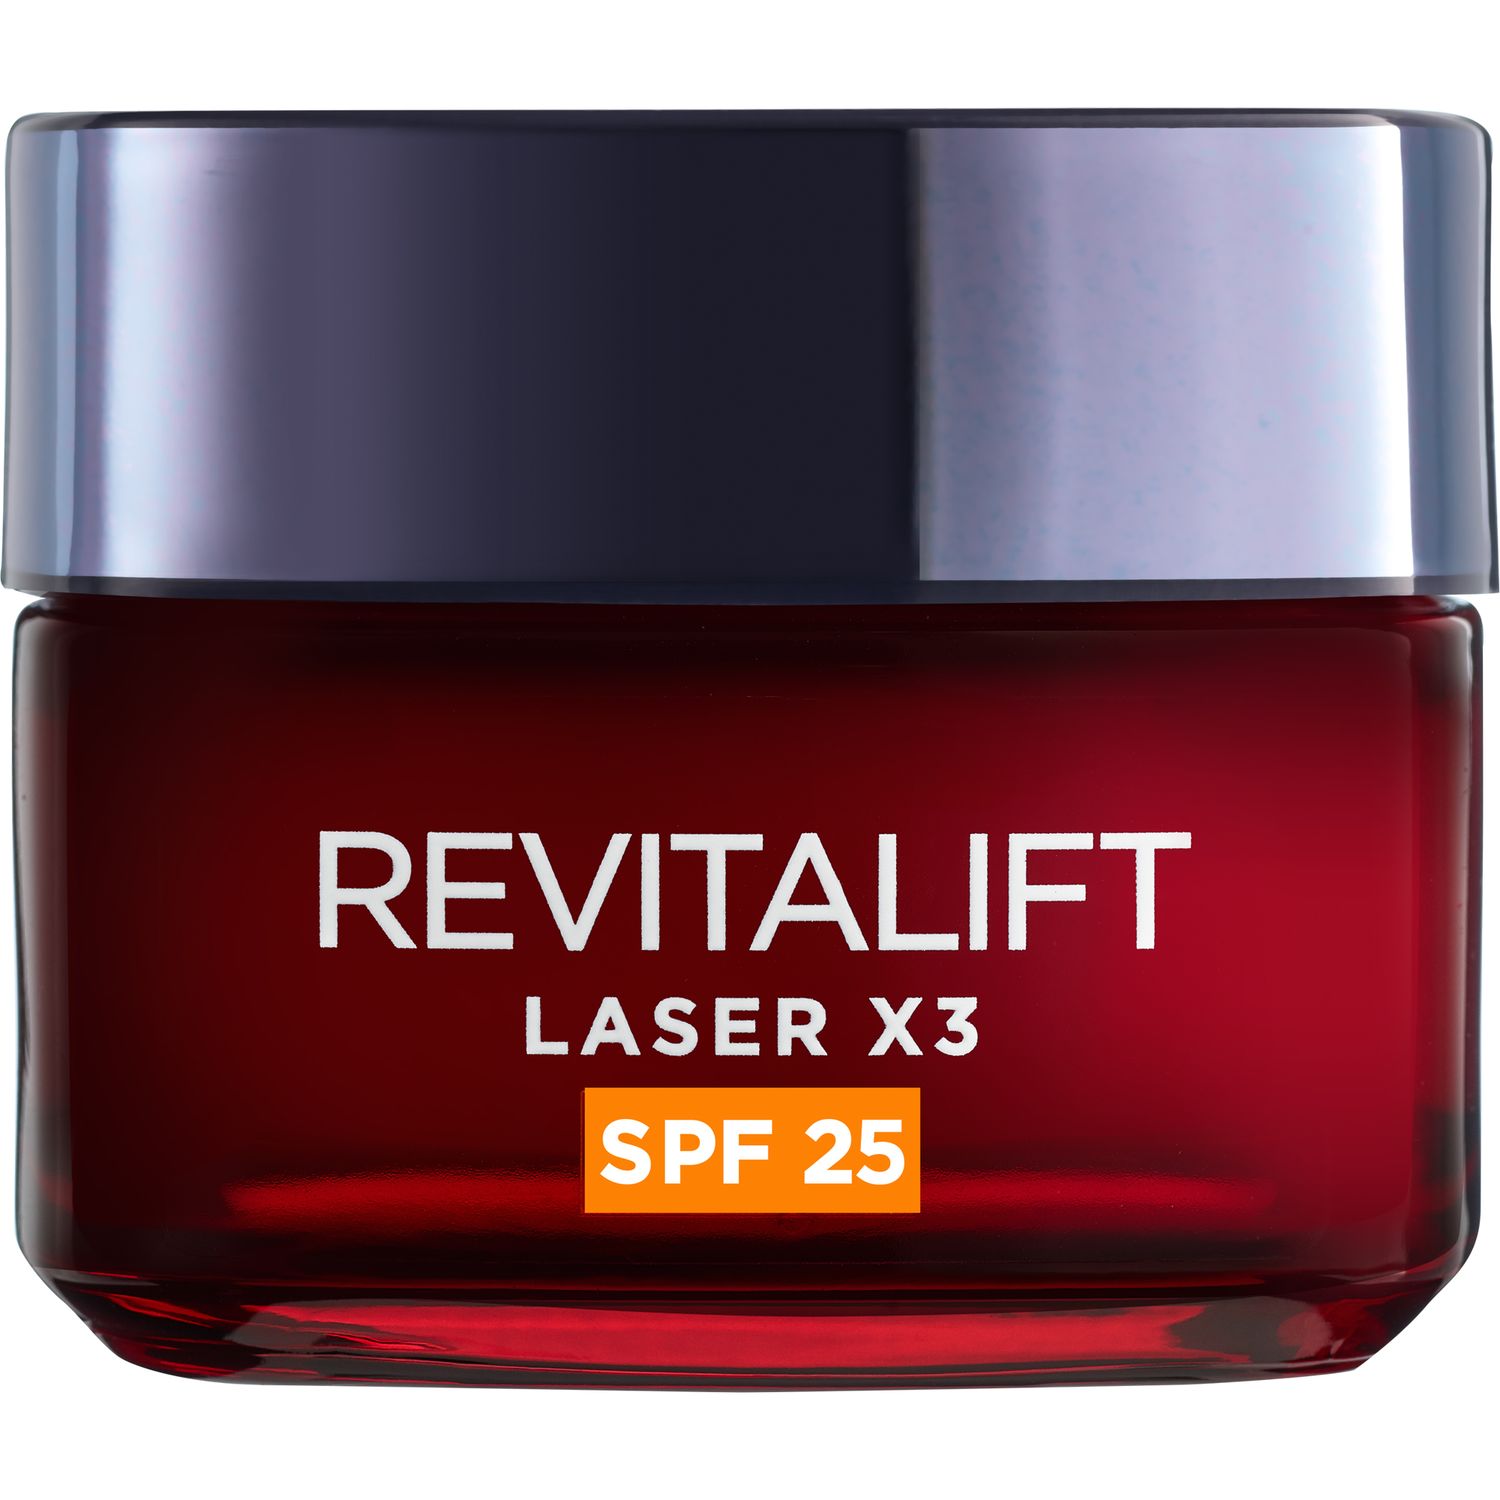 Денний регенеруючий крем для обличчя L'Oreal Paris Revitalift Laser х3 SPF 25, 50 мл (A9247102) - фото 1